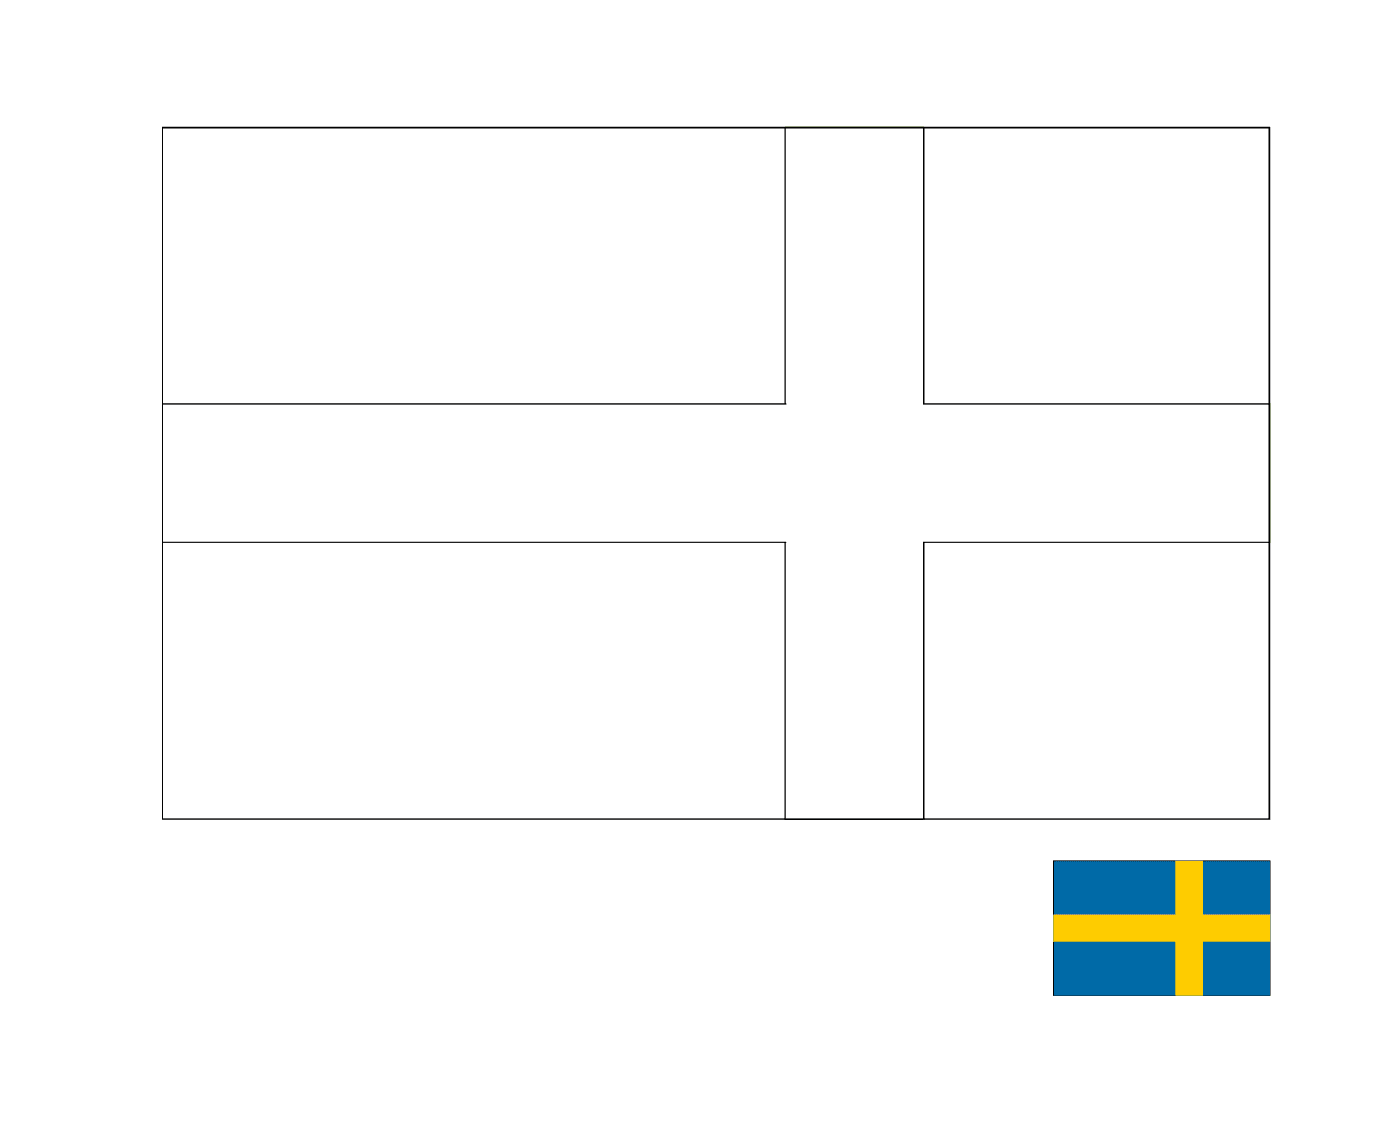  A flag of Sweden 